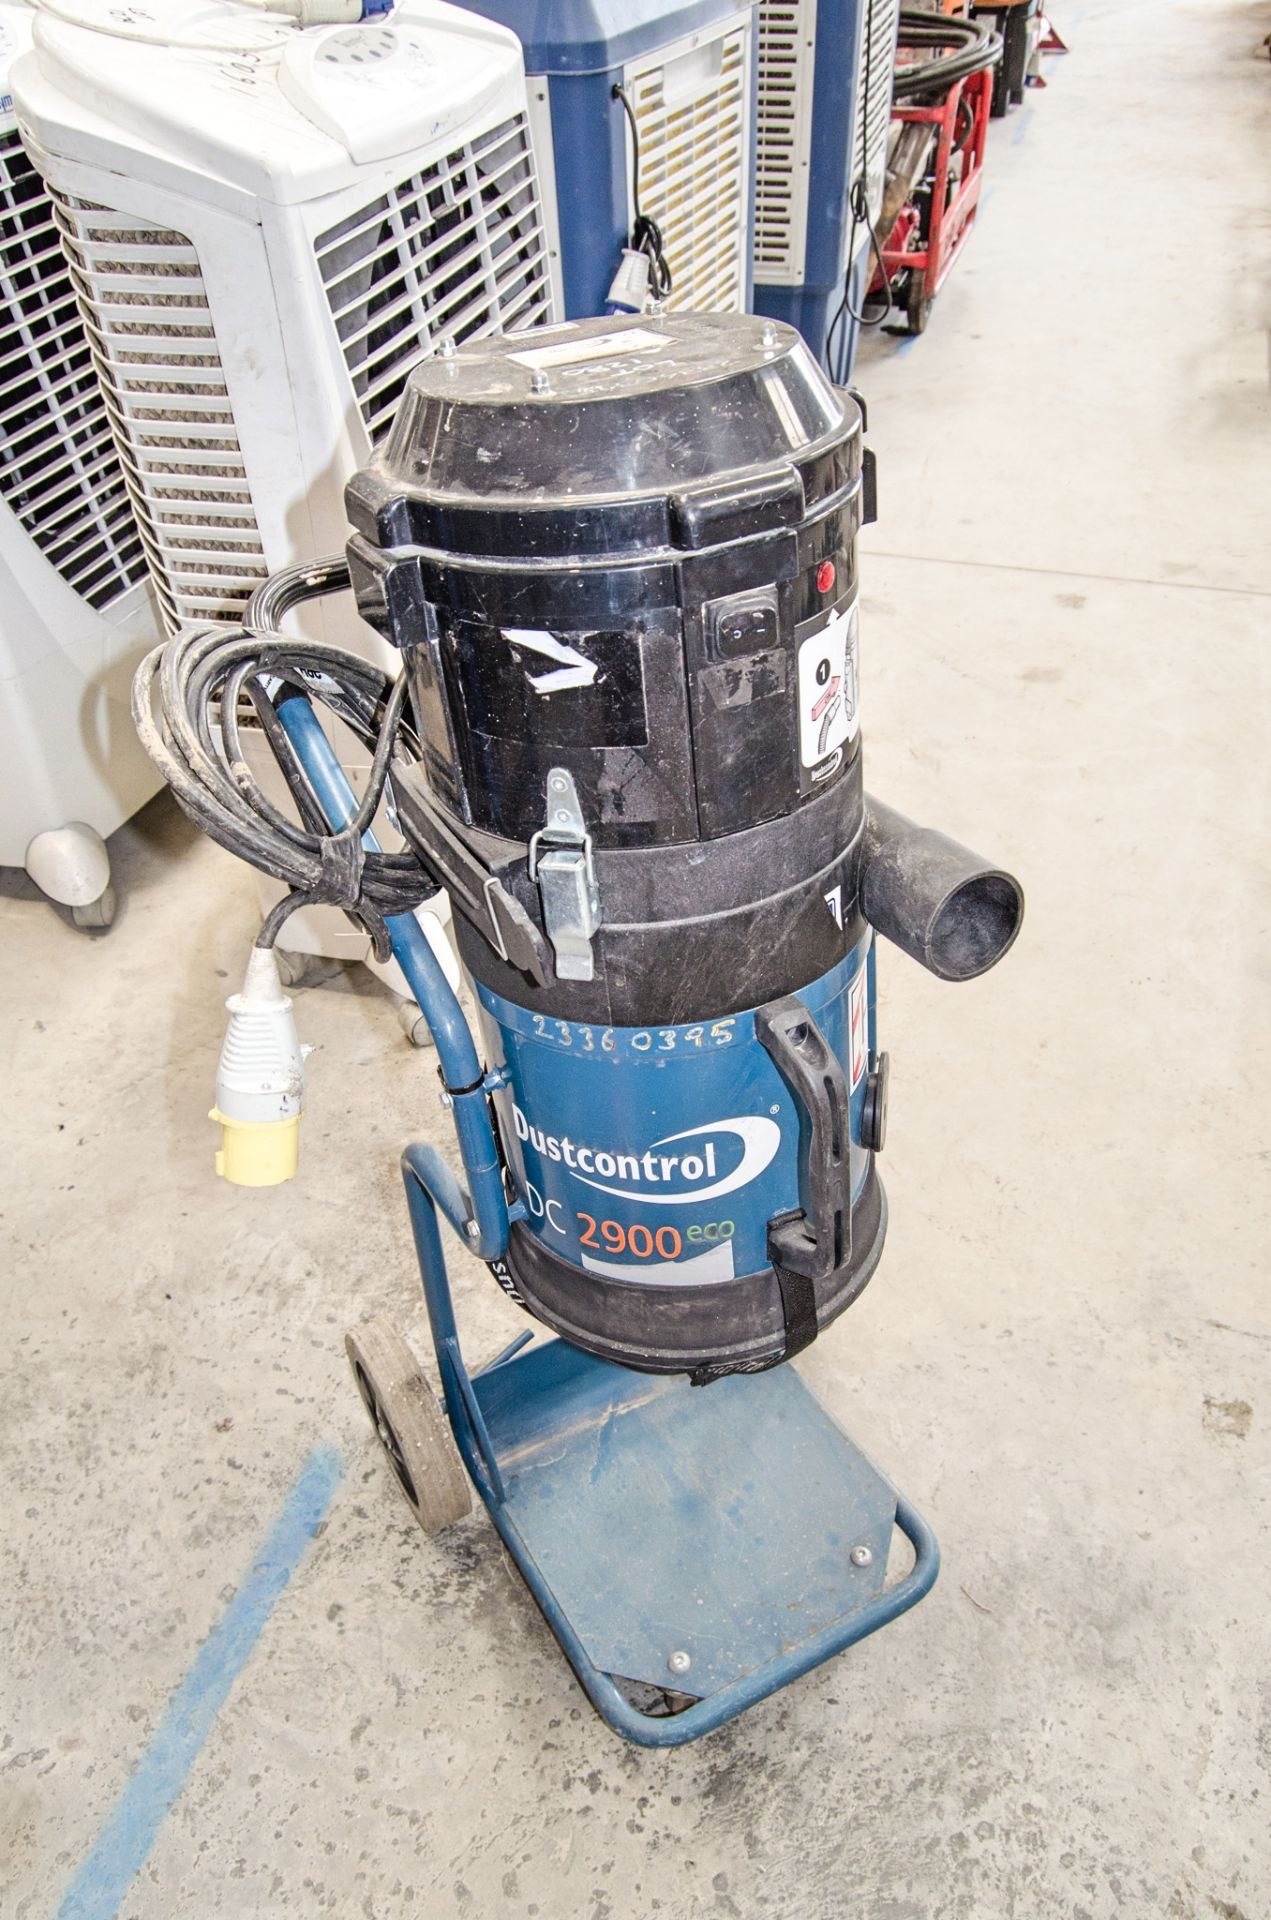 Dustcontrol DC2900 Eco 110v vacuum cleaner ** No hose ** 23360395